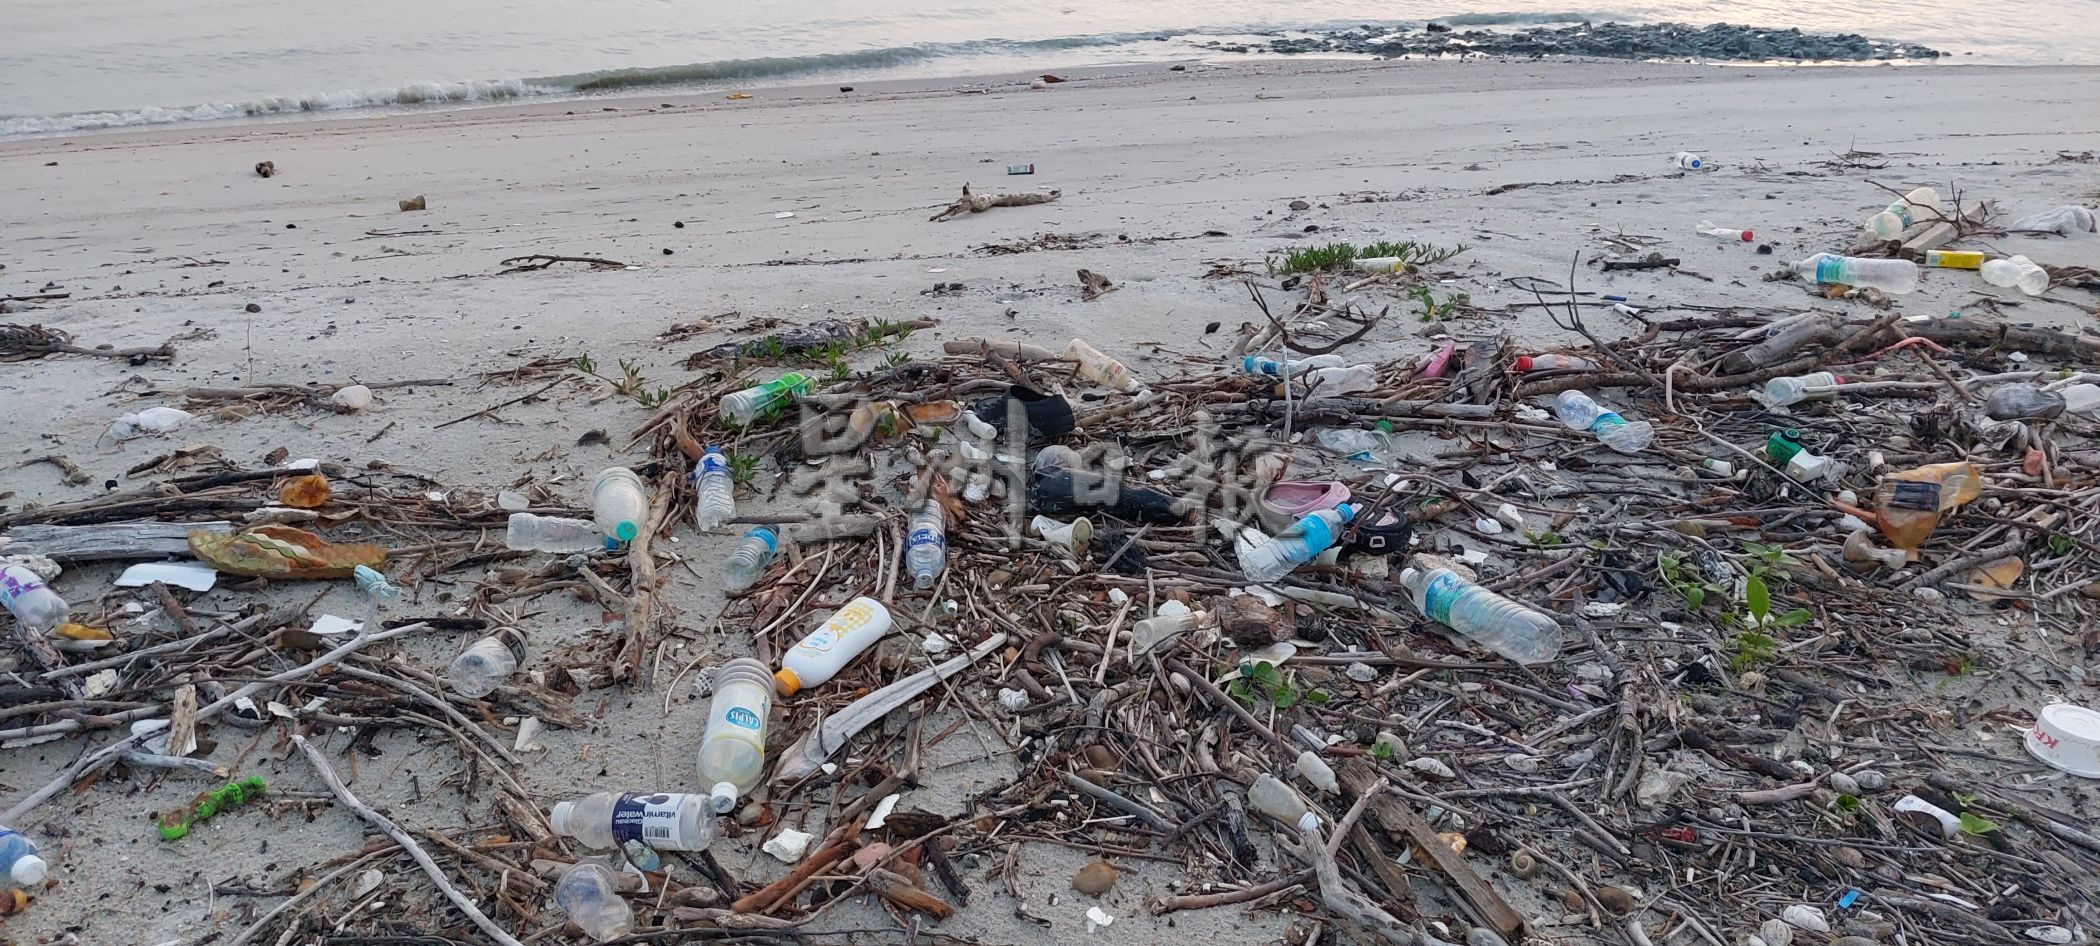 （古城封面主文）填海沙滩被访客蹂躏成处处垃圾